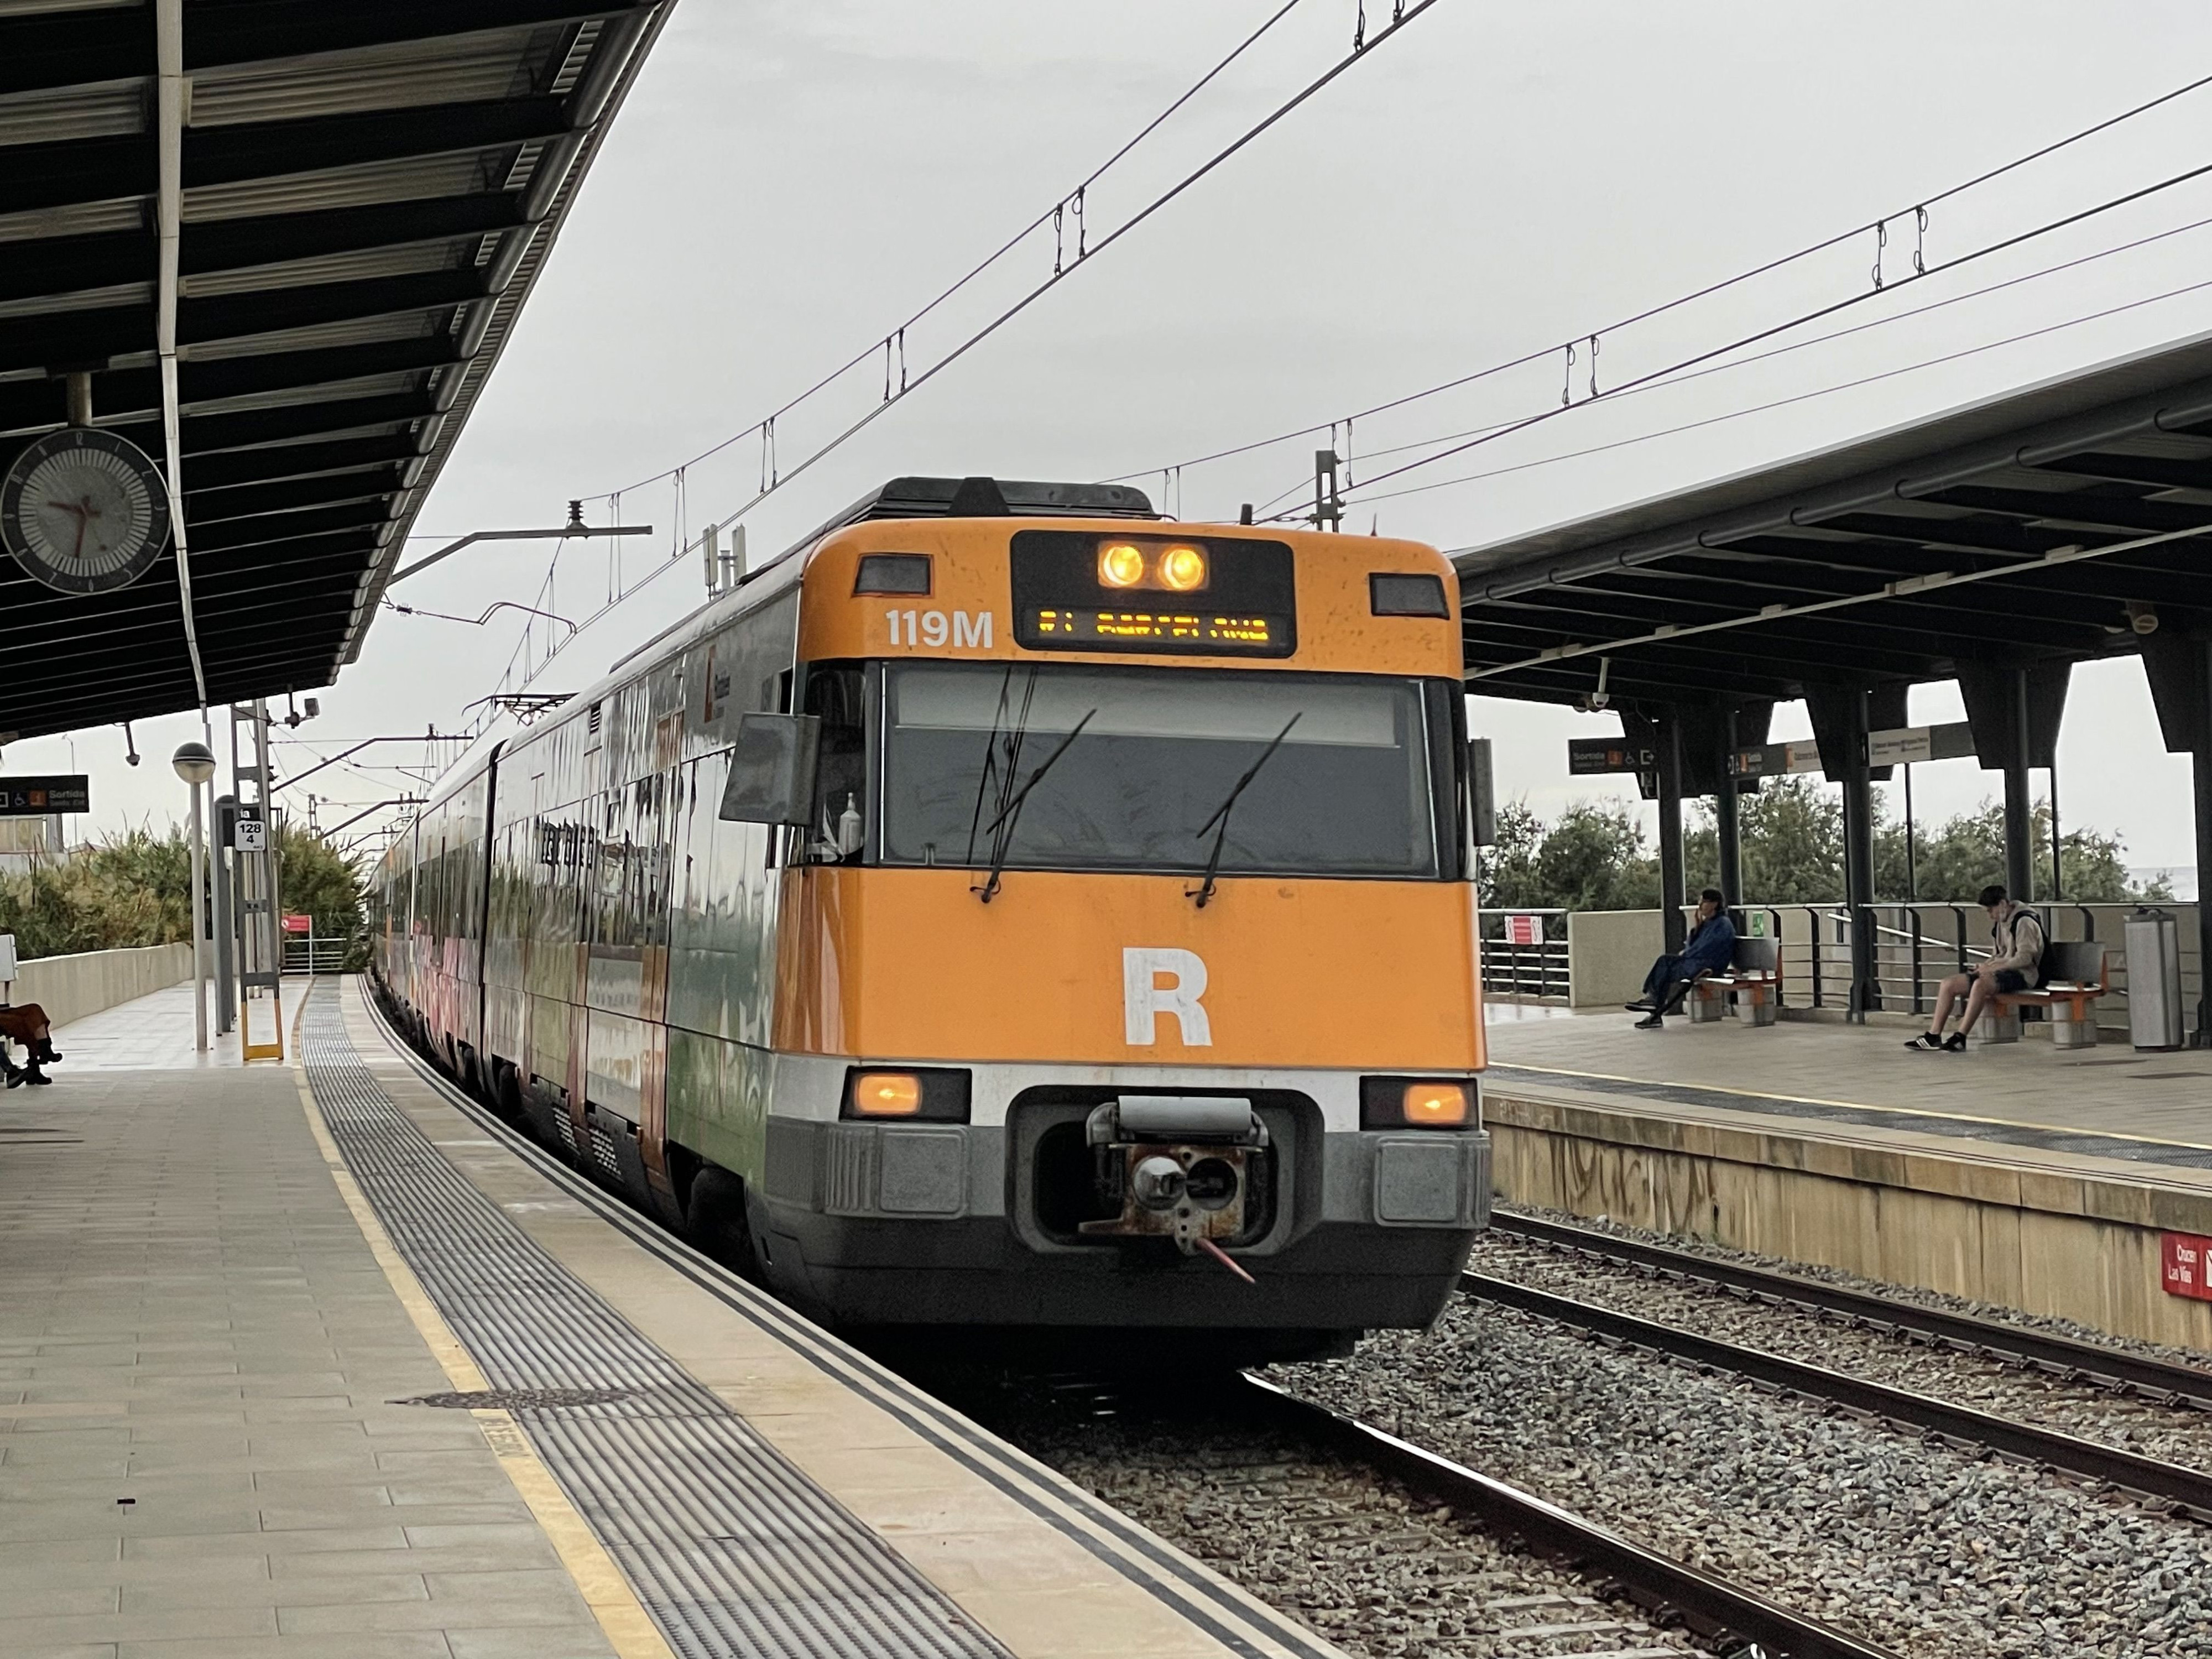 Tren de la R1 de Rodalies / METRÓPOLI